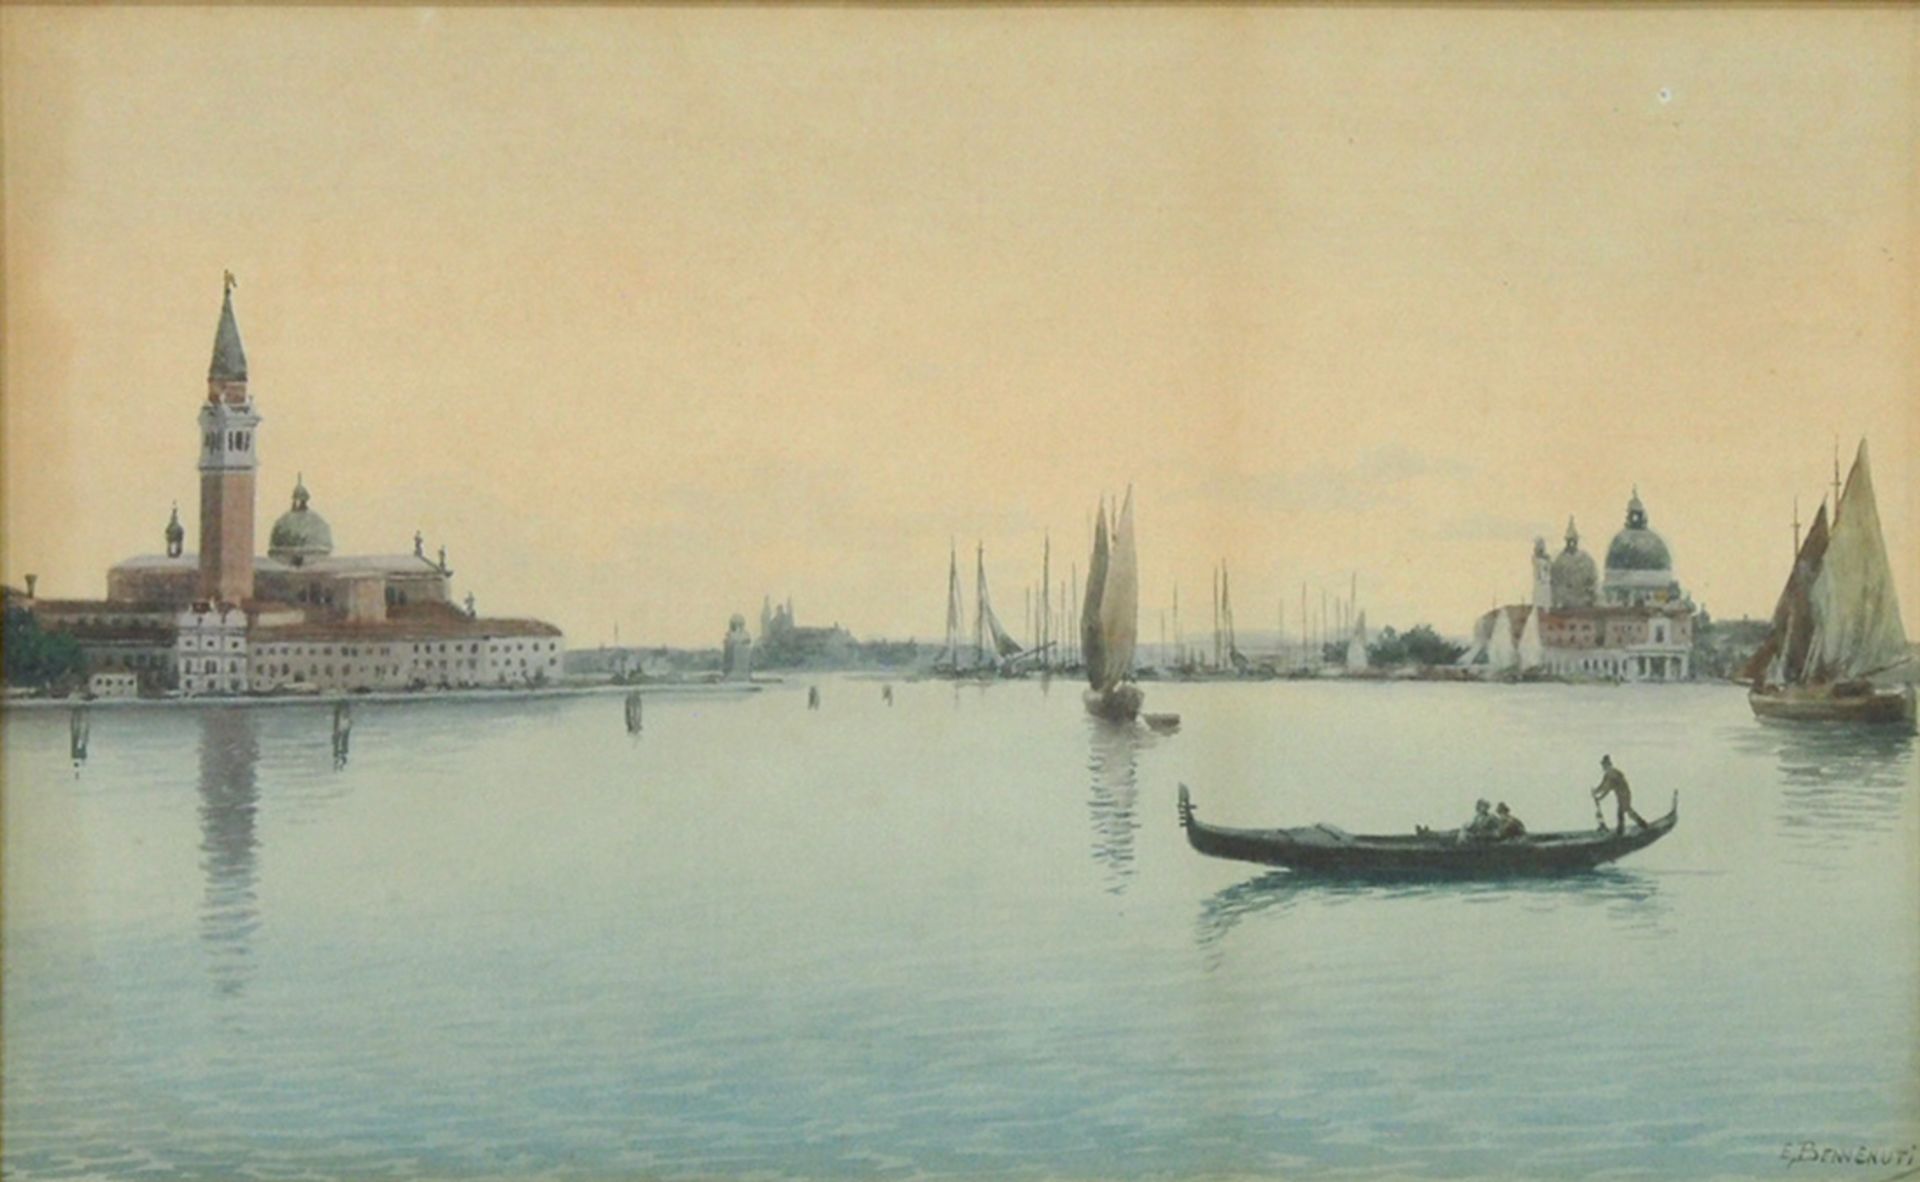 BENVENUTI, Eugenio: Canale Grande von Venedig - Bild 2 aus 2